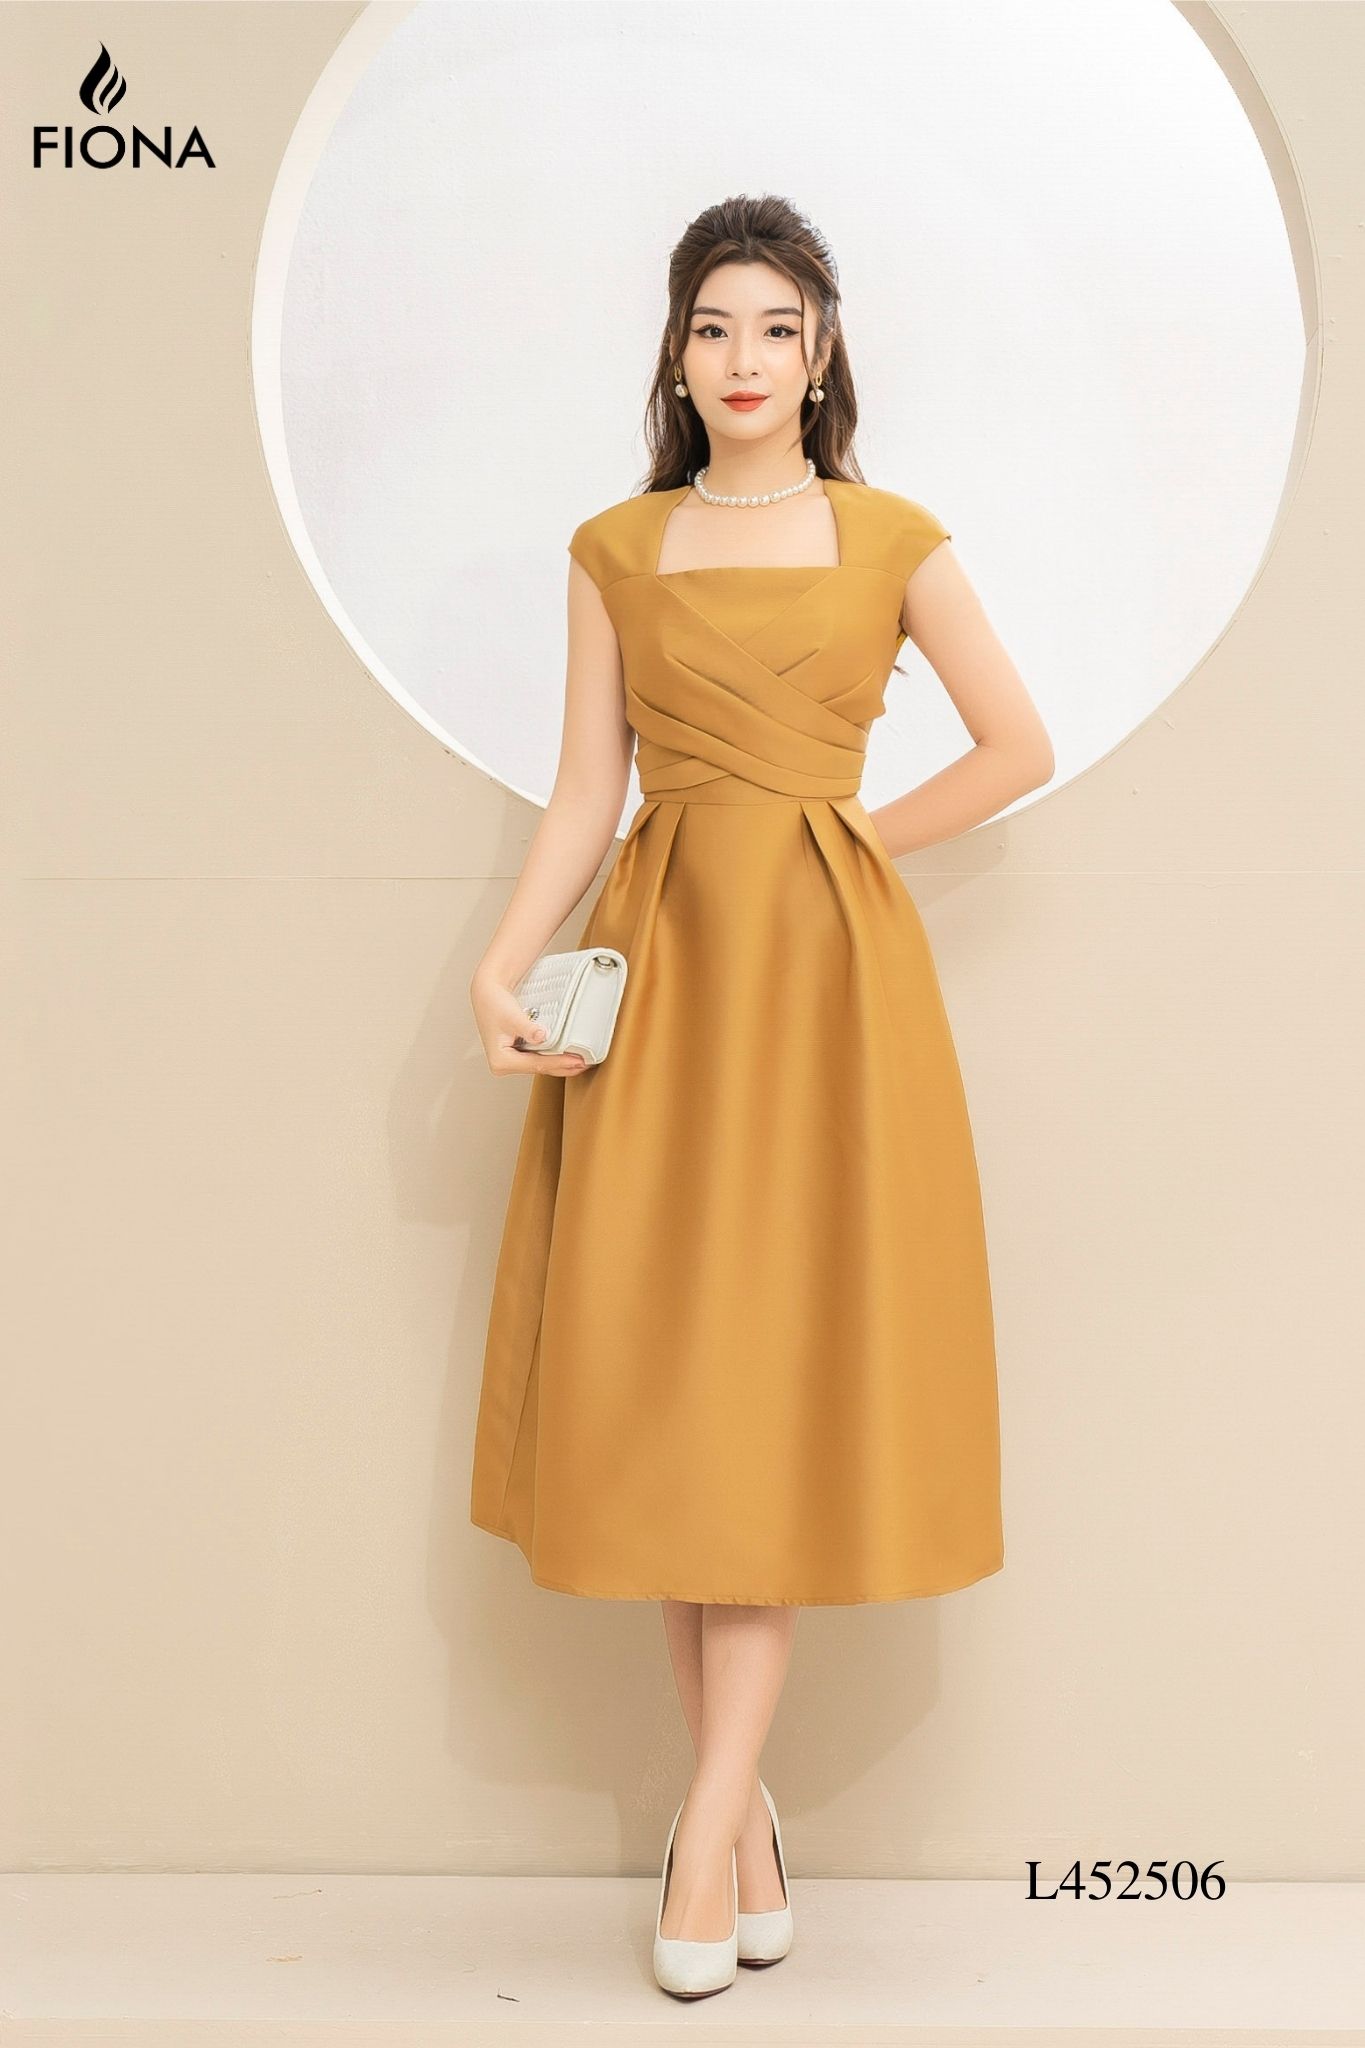 Mới) Mã A6489 Giá 970K: Váy Đầm Xòe Liền Thân Nữ Zhout Hàng Mùa Xuân Thu  Đông Thời Trang Nữ Chất Liệu G03 Sản Phẩm Mới, (Miễn Phí Vận Chuyển Toàn  Quốc).